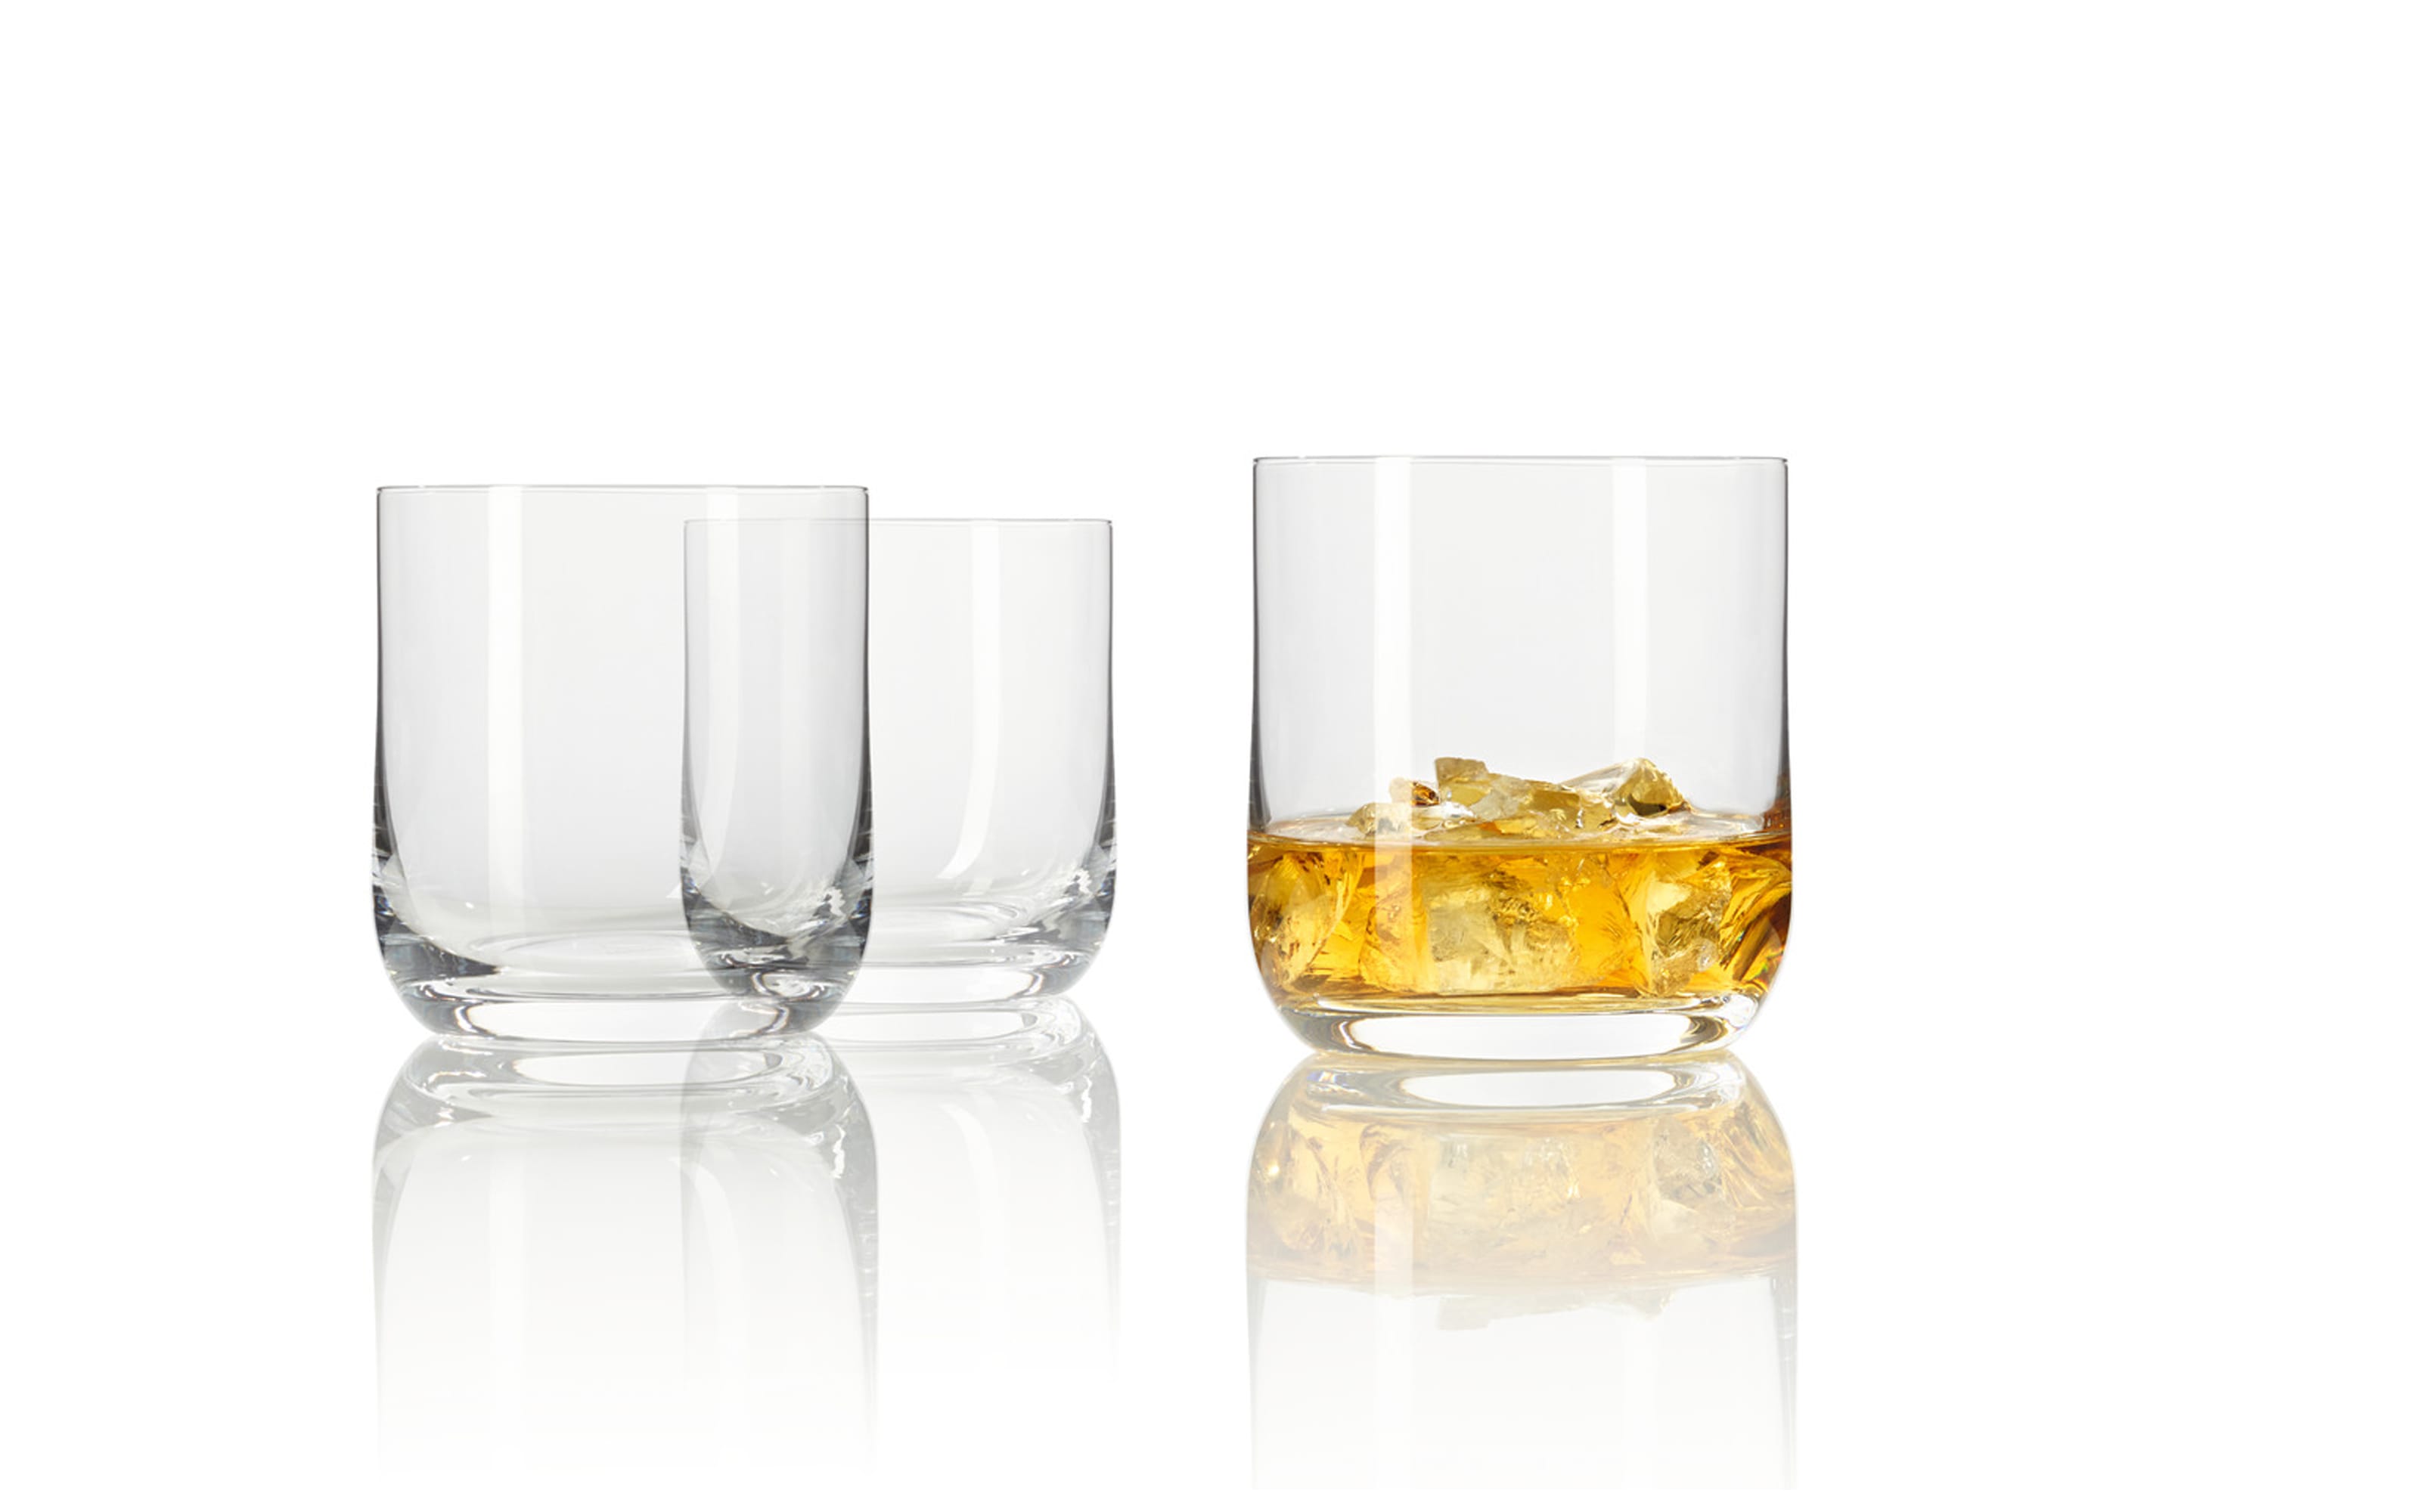 Whiskyglas 320 ml Daily, 6-teilig